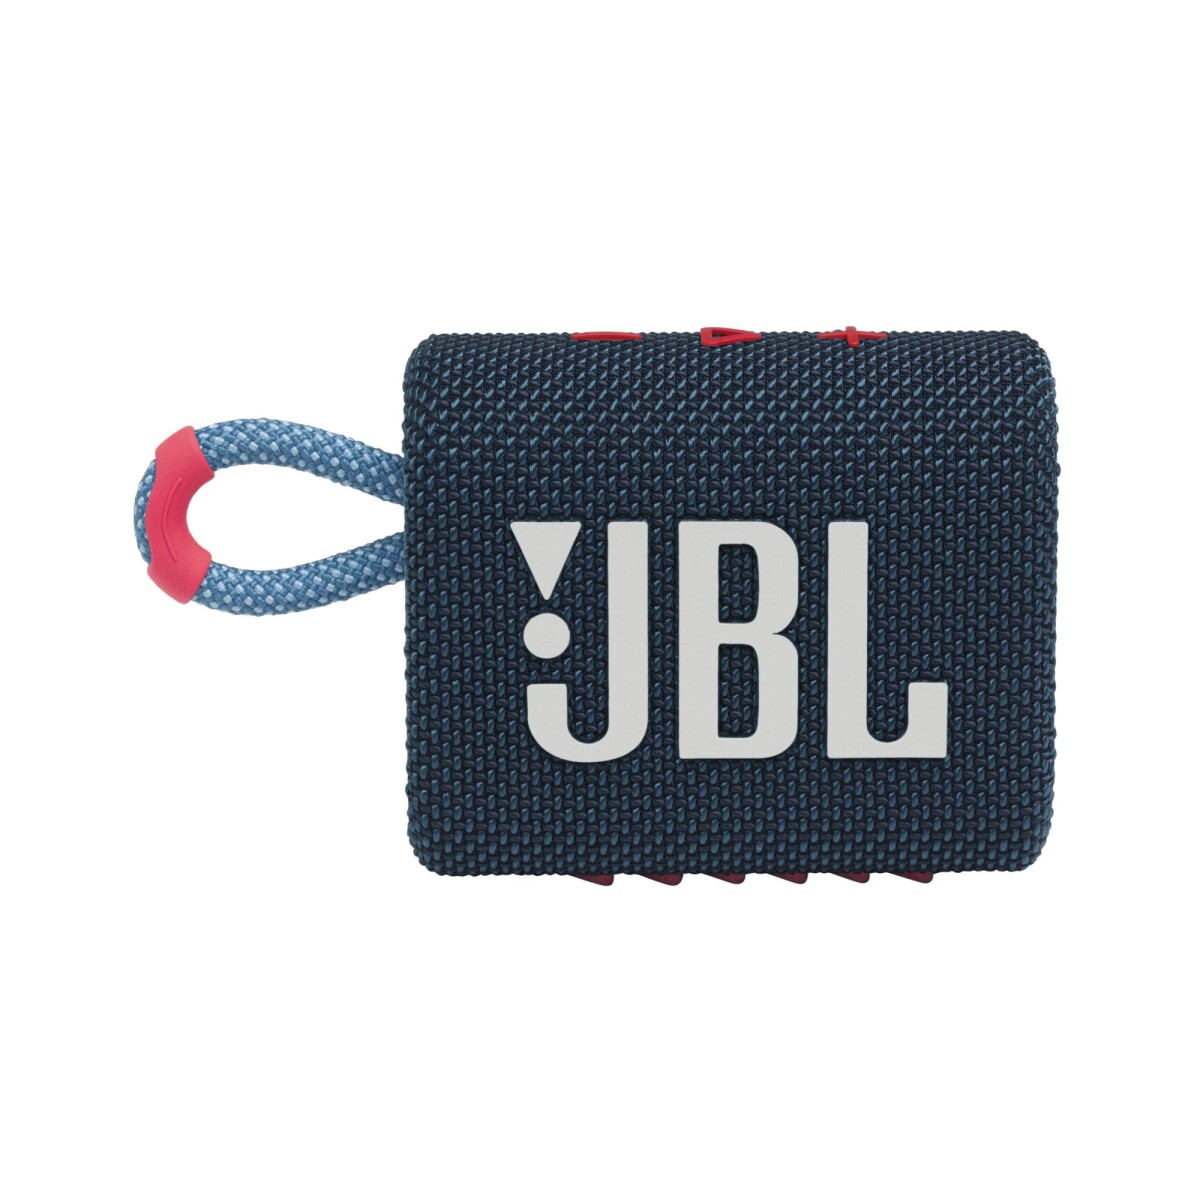 Speaker portátil JBL Go 3 - Azul/Rosa 